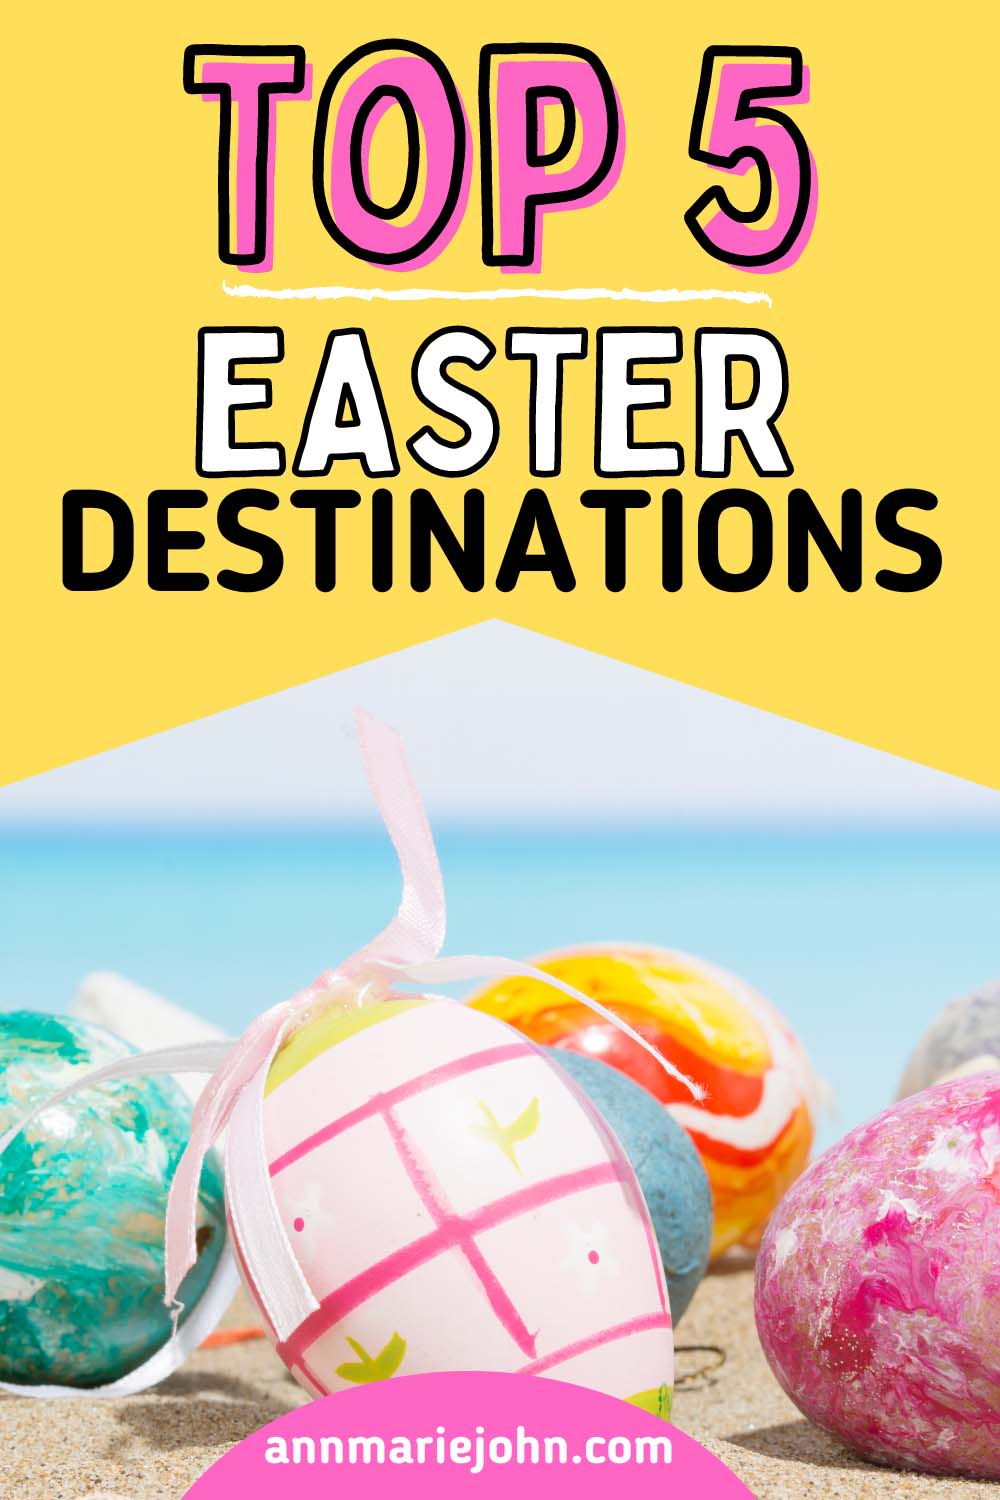 Top 5 Easter Destinations